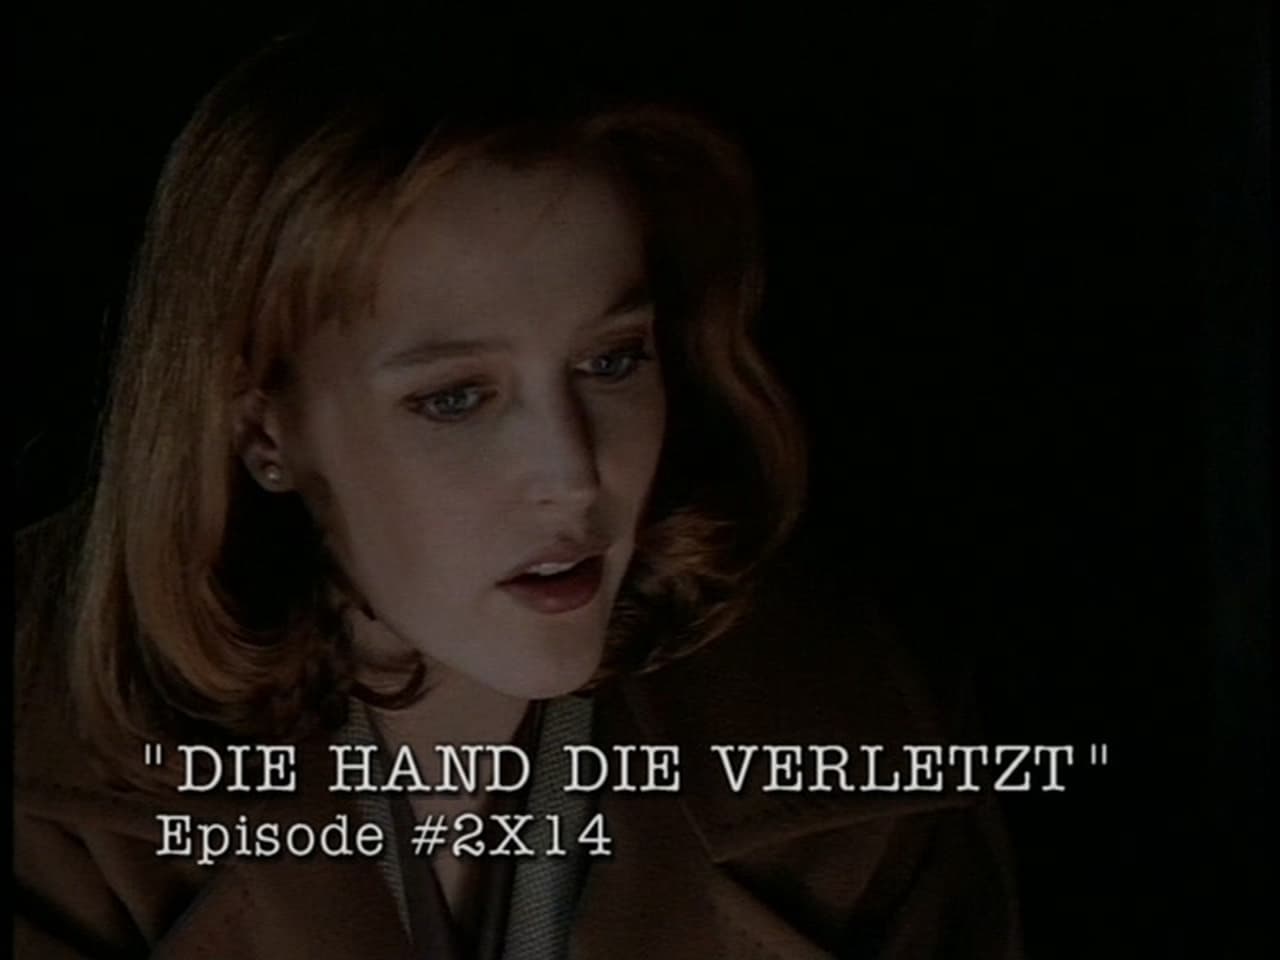 The X-Files - Season 0 Episode 36 : Behind the truth - Die Hand die verletzt